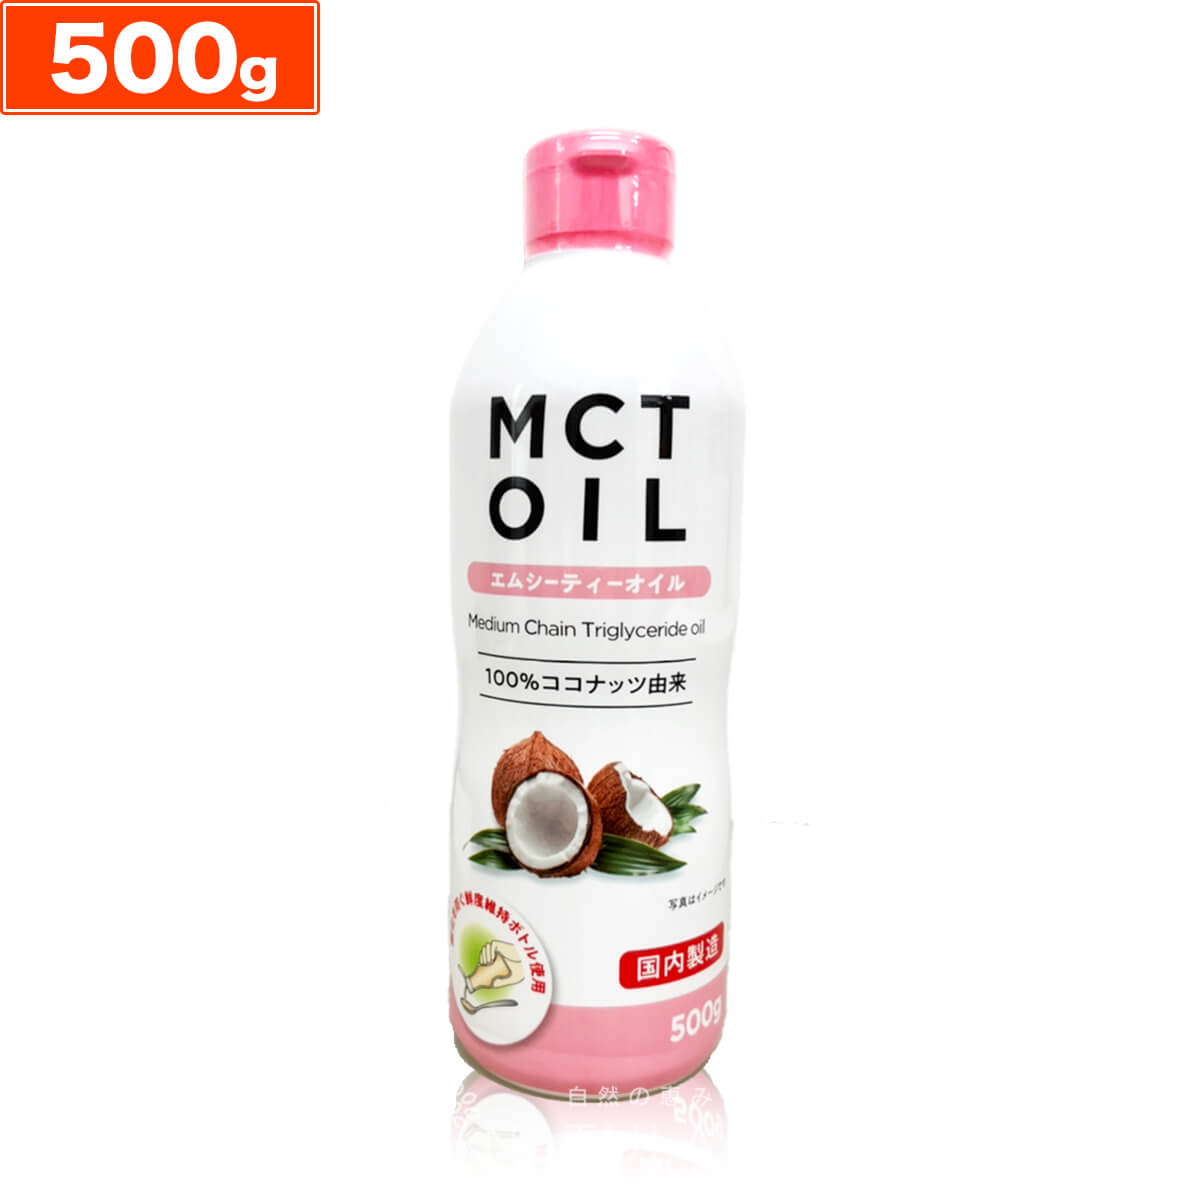 MCTオイル 500g について 100％ココナッツ由来の原料 ナチュランドのMCTオイルはココナッツから中鎖脂肪酸だけを抽出しました。 鮮度維持ボトルを採用 酸化を防ぐ鮮度維持ボトルを使用しいつでも新鮮に。 たっぷり大容量 毎日大さじ1杯ずつとっても1ヶ月以上ご利用できます。ご家族でのご利用にも最適です。 名称 食用油脂 内容量 500g 原材料名 中鎖脂肪酸油（国内製造） 使用上の注意 ●直射日光や高温多湿を避けて暗所で保存してください ●本品は加熱調理用の油ではありません ●油を直接飲むことはお控えください ●発泡ポリスチレン容器（カップラーメンなど）には使用しないでください ●開封後はなるべく早くお召し上がりください 販売者 株式会社 朝日トップ ＞ 商品一覧 ＞ MCTオイル ＞ MCTオイル 500g ＼まとめ買いがお得です／ 1本通常価格 1,980円 2本セット通常価格 3,780円1本あたり1,890円 3本セット通常価格 4,980円1本あたり1,660円 12本セット通常価格 18,800円1本あたり1,567円